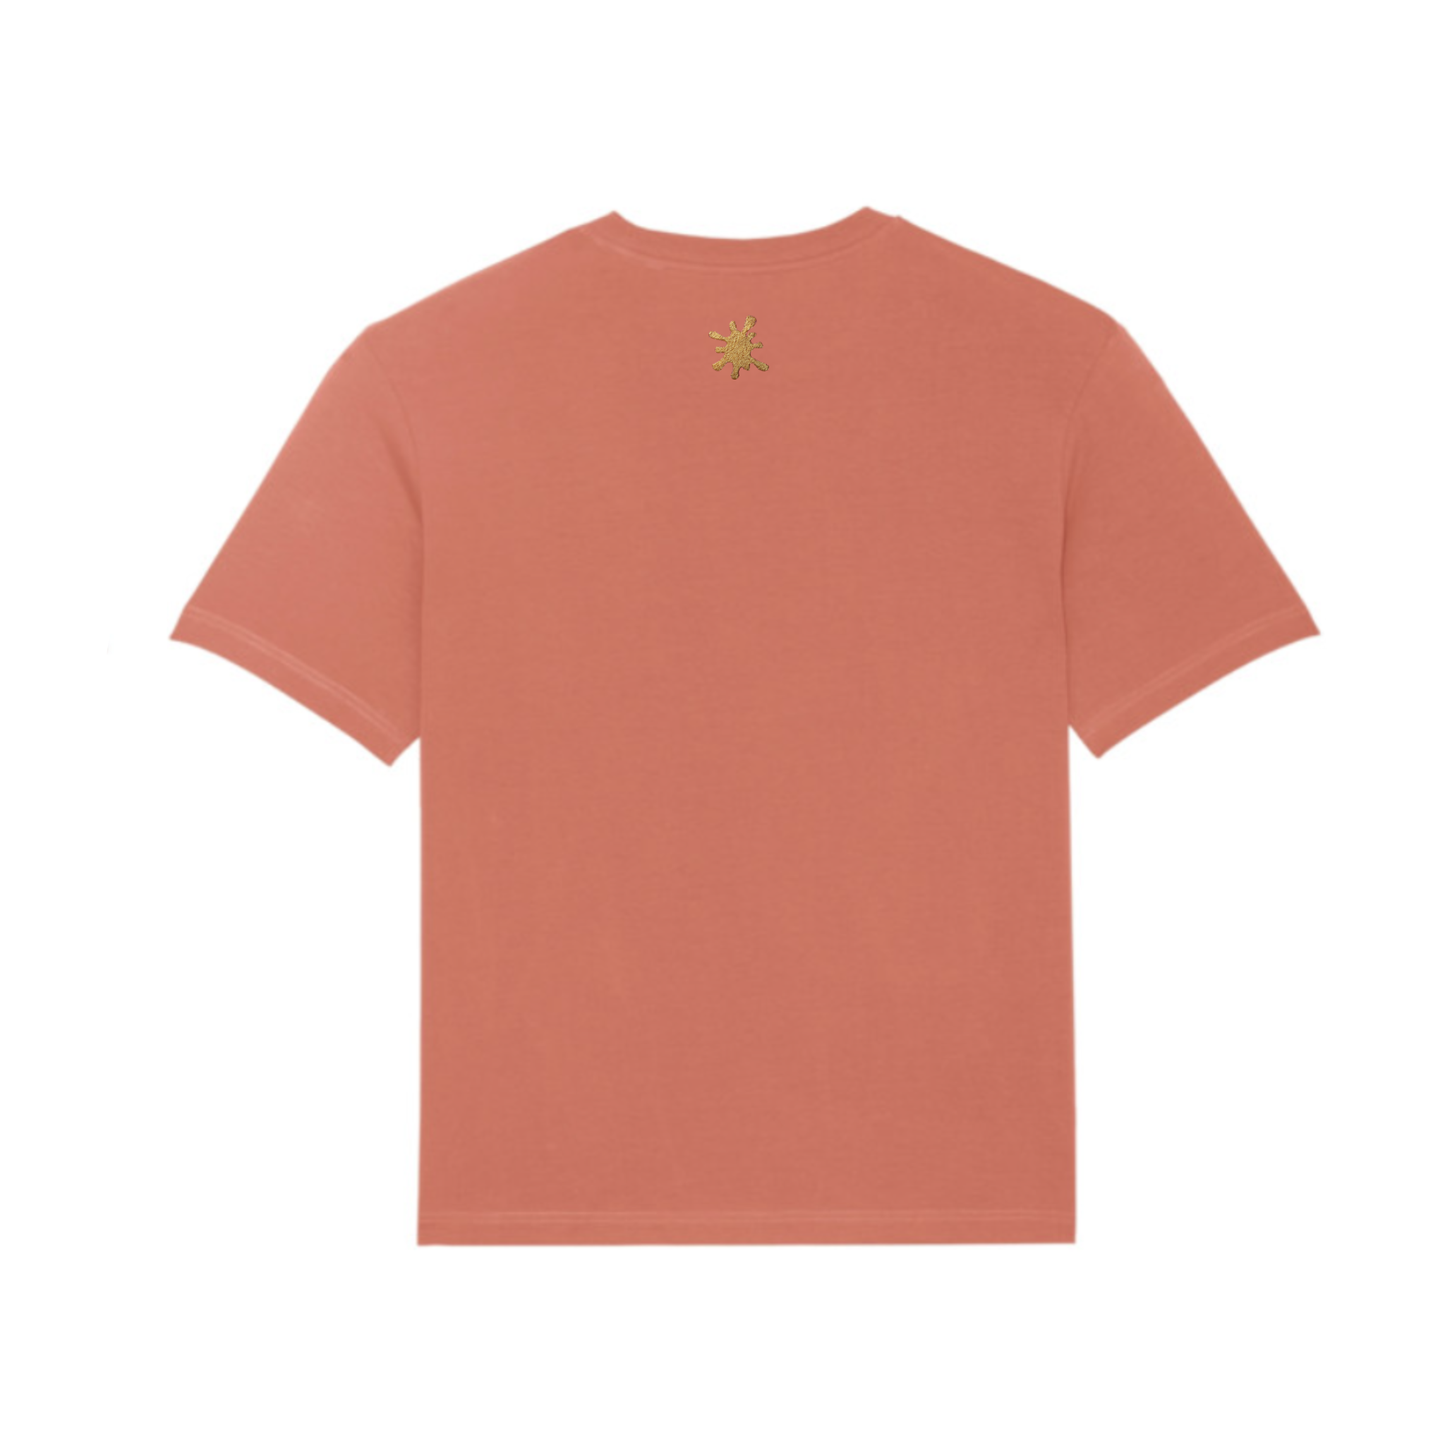 Custard Shop Official Scrabble Style T-Shirt | Salmon Pink Custard Shop Official